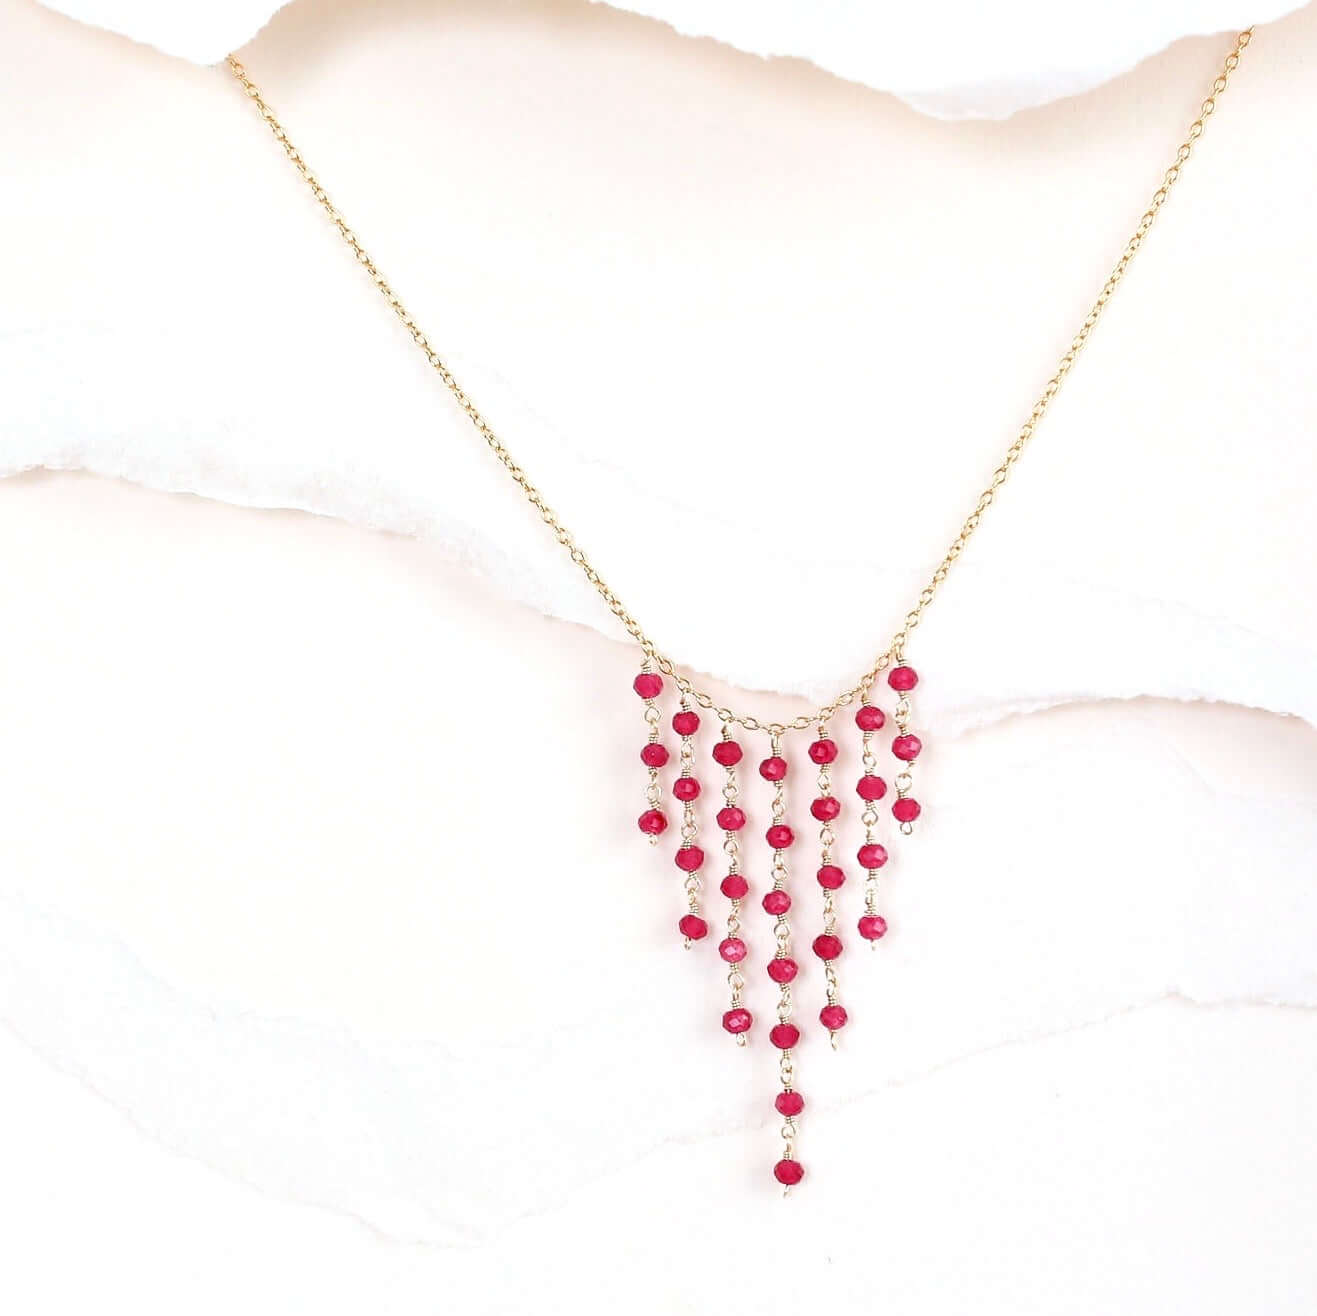 Gold Fringe Necklace featuring beautiful Ruby Quartz gemsto